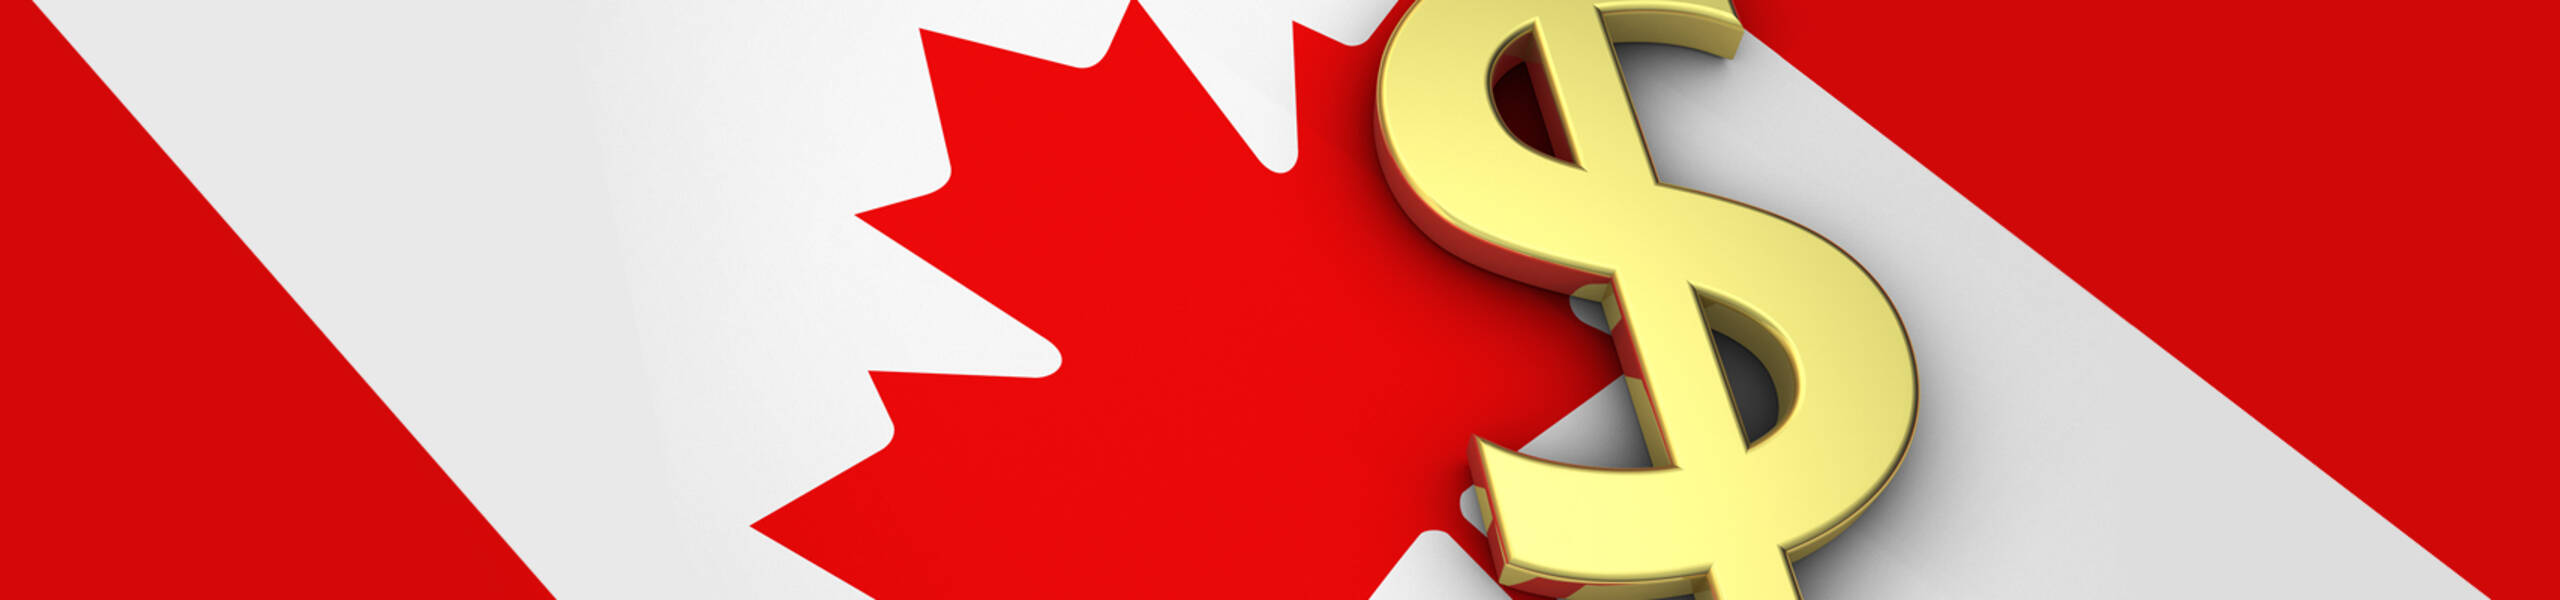 CPI m/m และ Core Retail Sales m/m ของประเทศแคนาดาที่จะประกาศในวันนี้สกุลเงินแคนาดาอาจจะมีความผันผวนอย่างรุนแรง